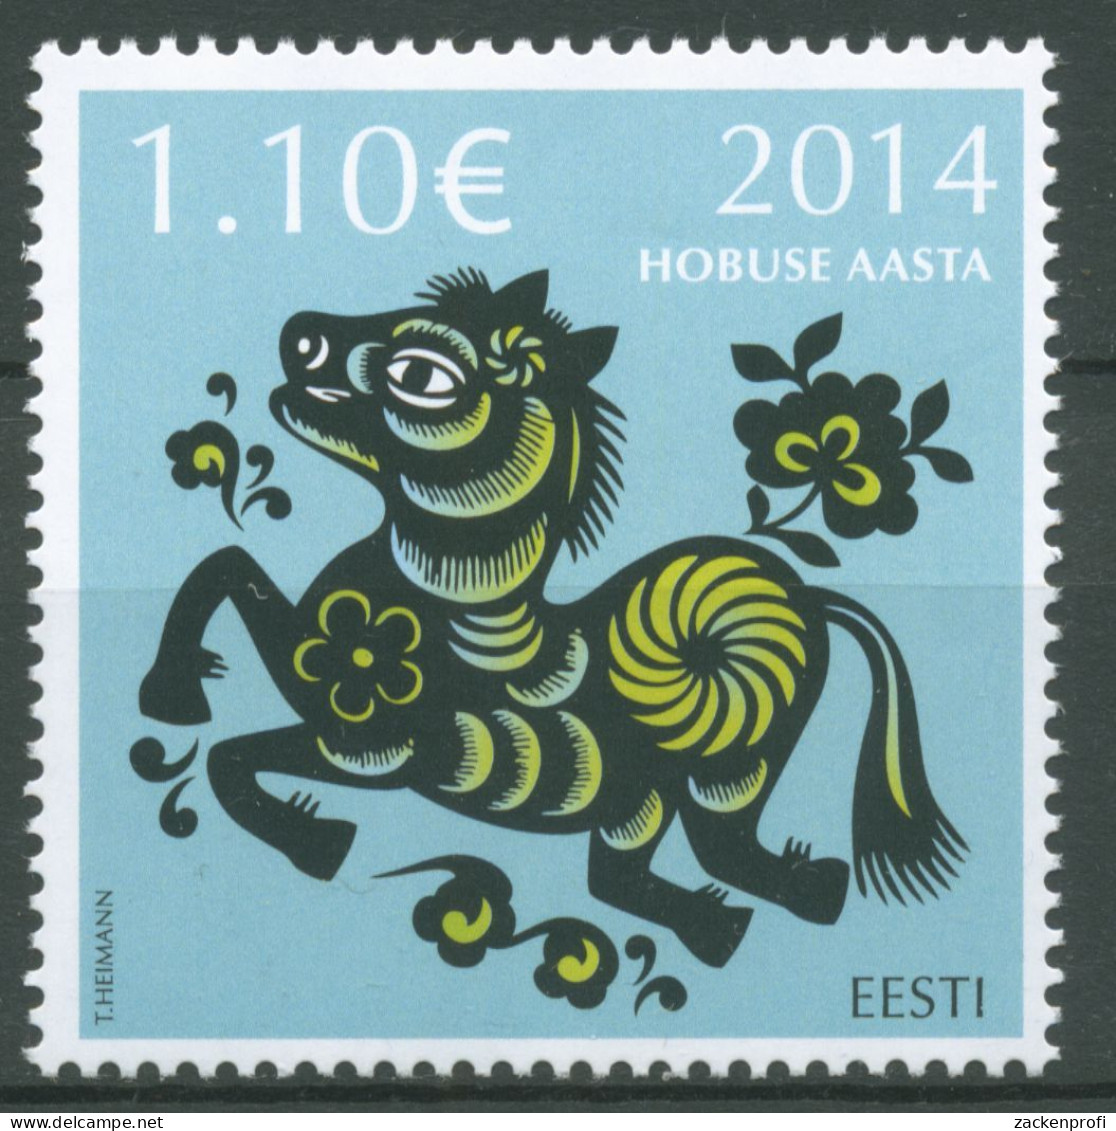 Estland 2014 Chinesisches Neujahr Jahr Des Pferdes 783 Postfrisch - Estland